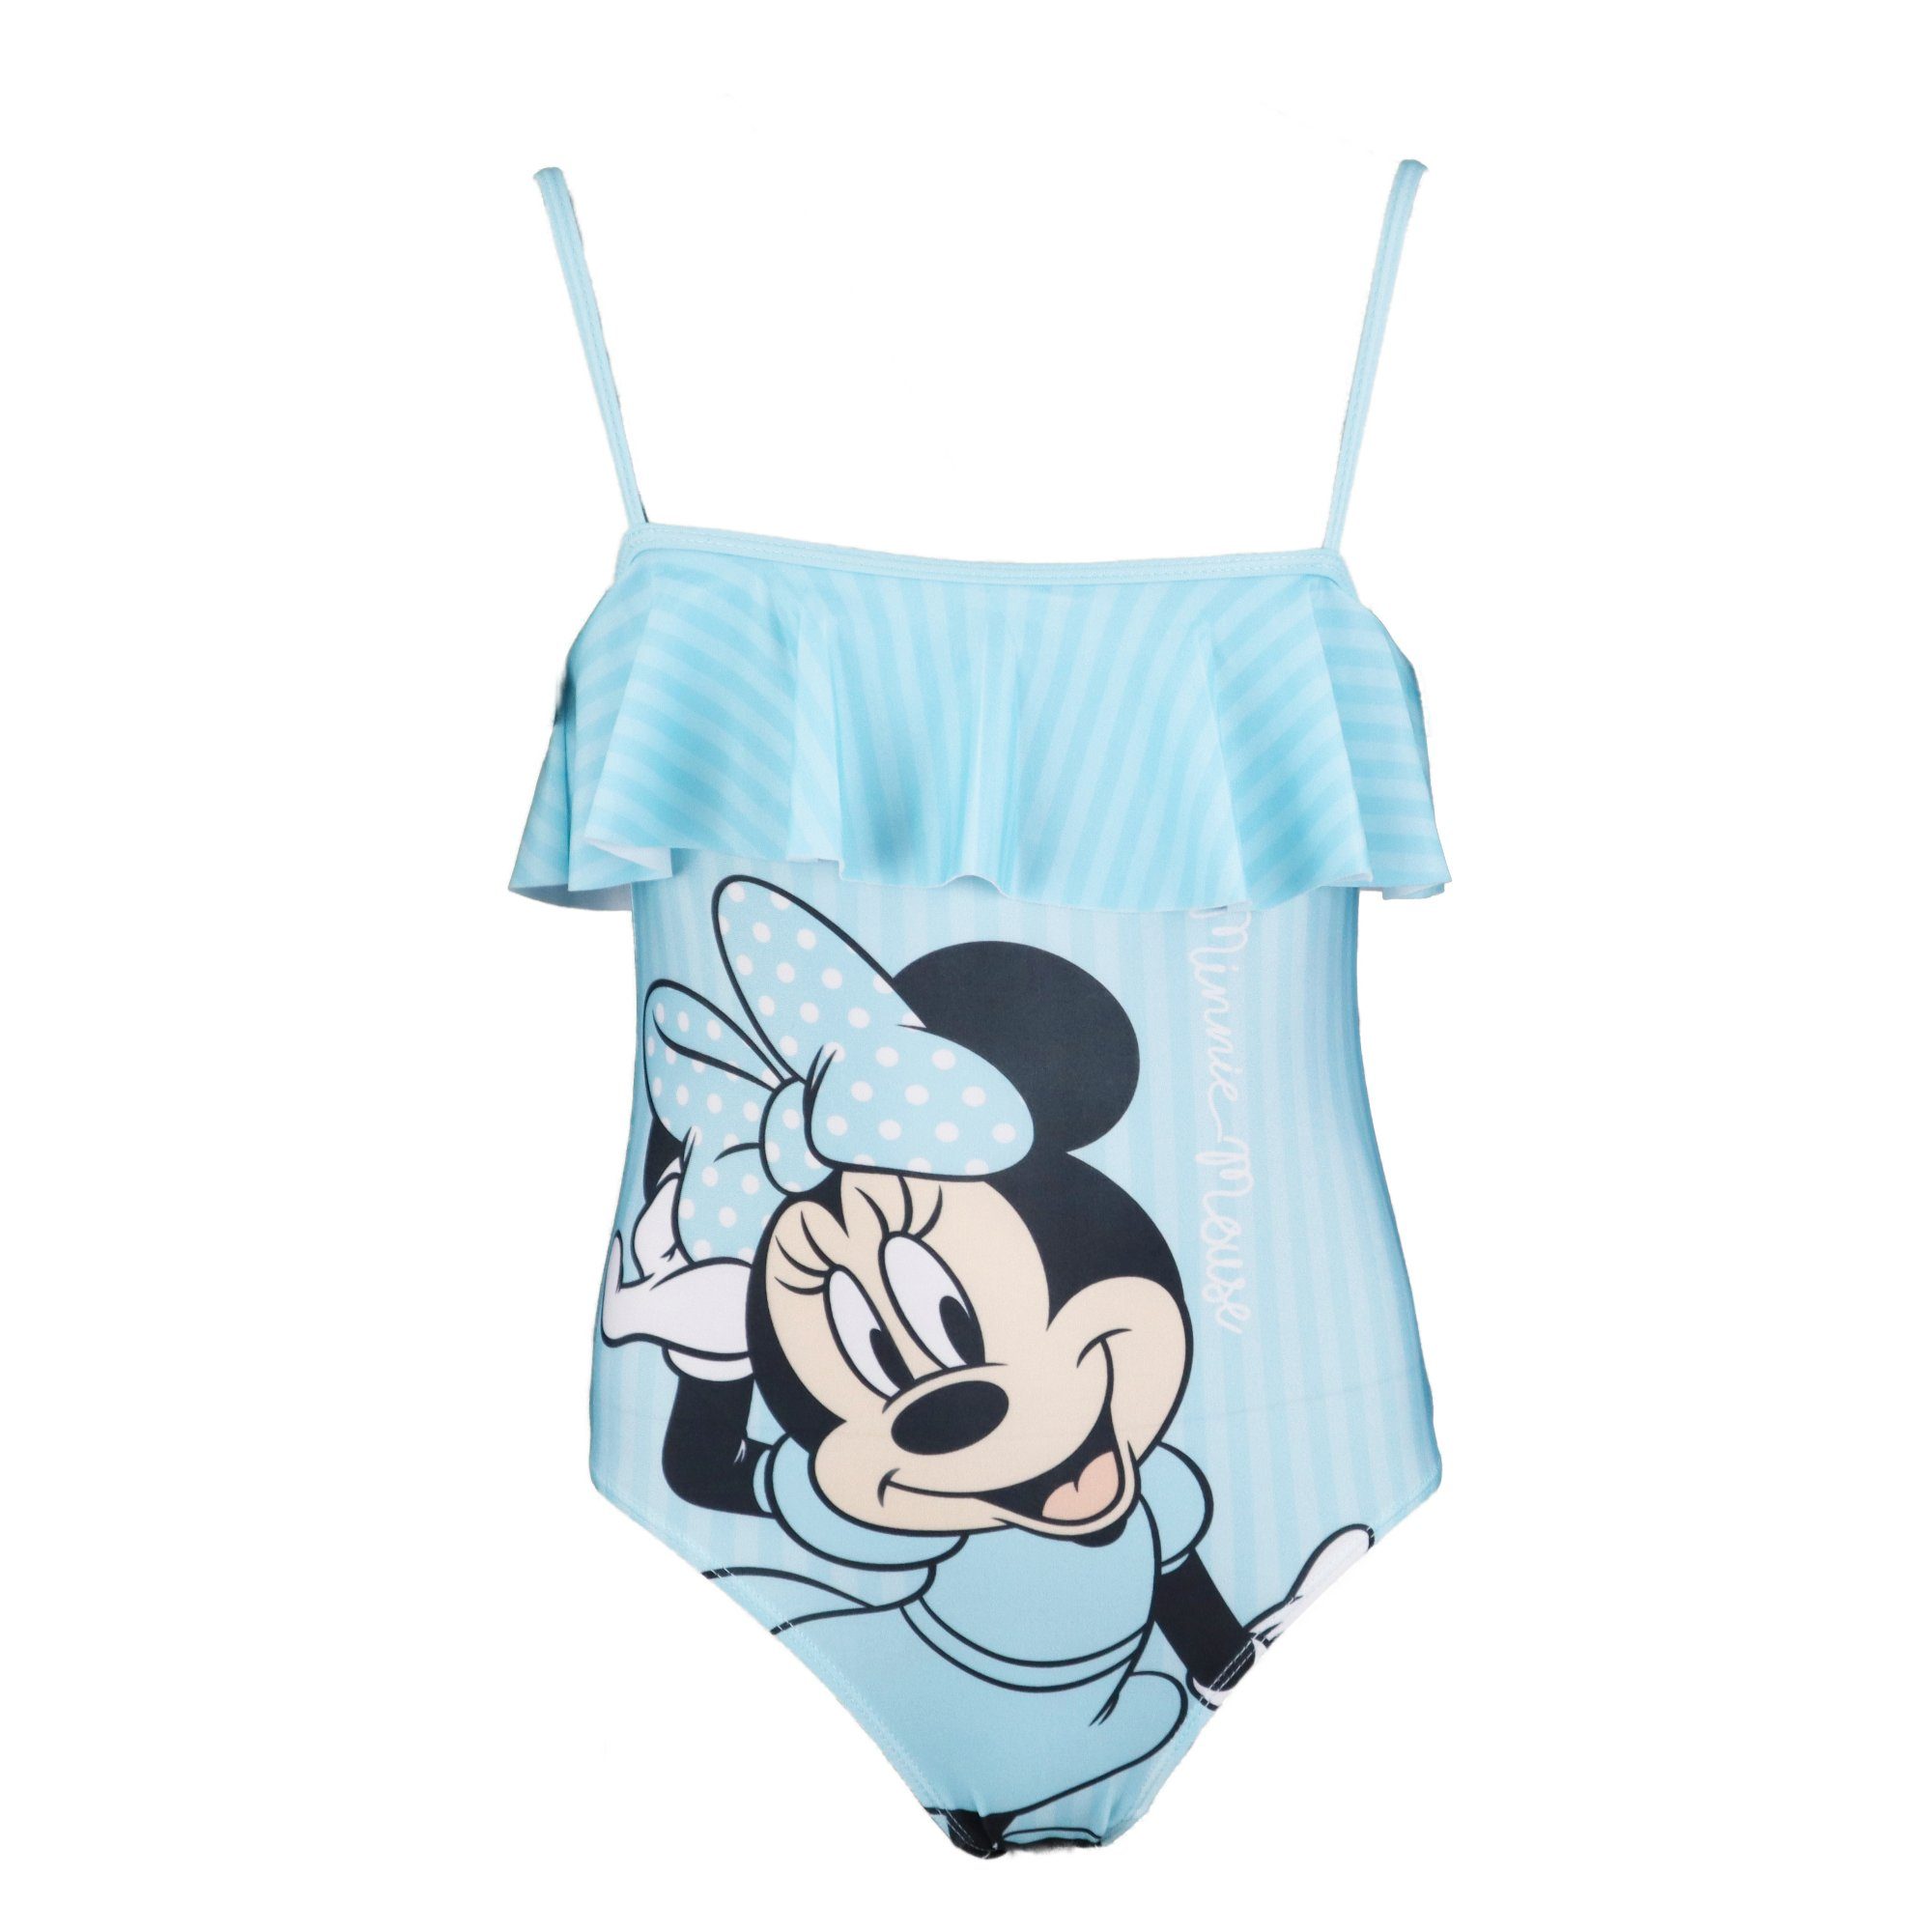 Disney Minnie Mouse Badeanzug Minnie Streifen Mädchen Kinder bademode Gr.  104 bis 134, Blau oder Pink